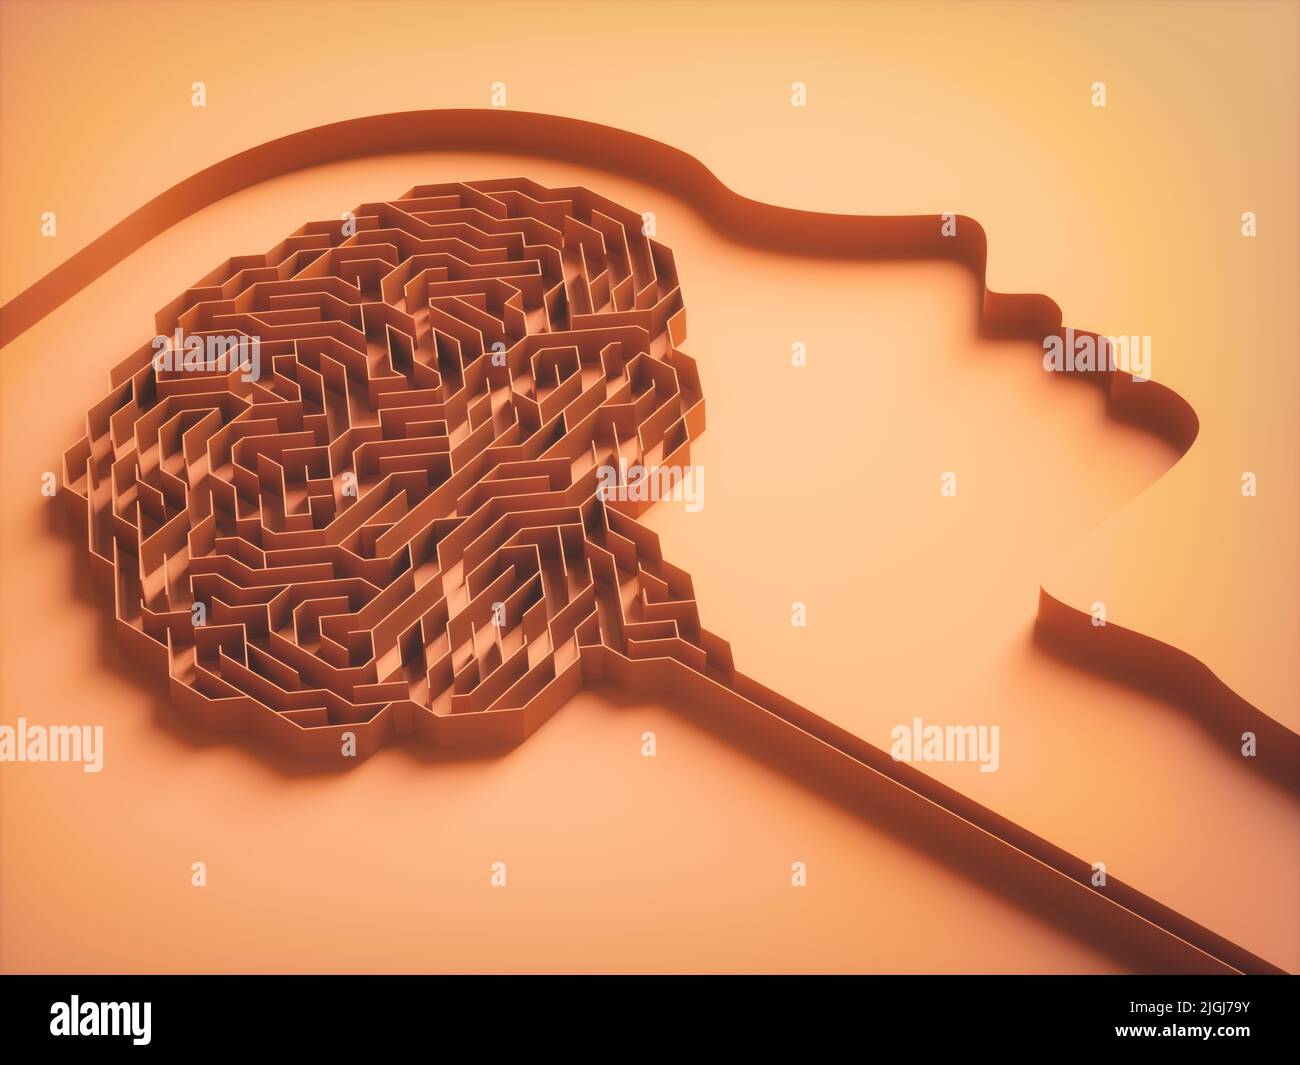 Ilustración de 3D, laberinto en forma de cerebro. Imagen conceptual de estudio y comportamiento cerebral. Foto de stock